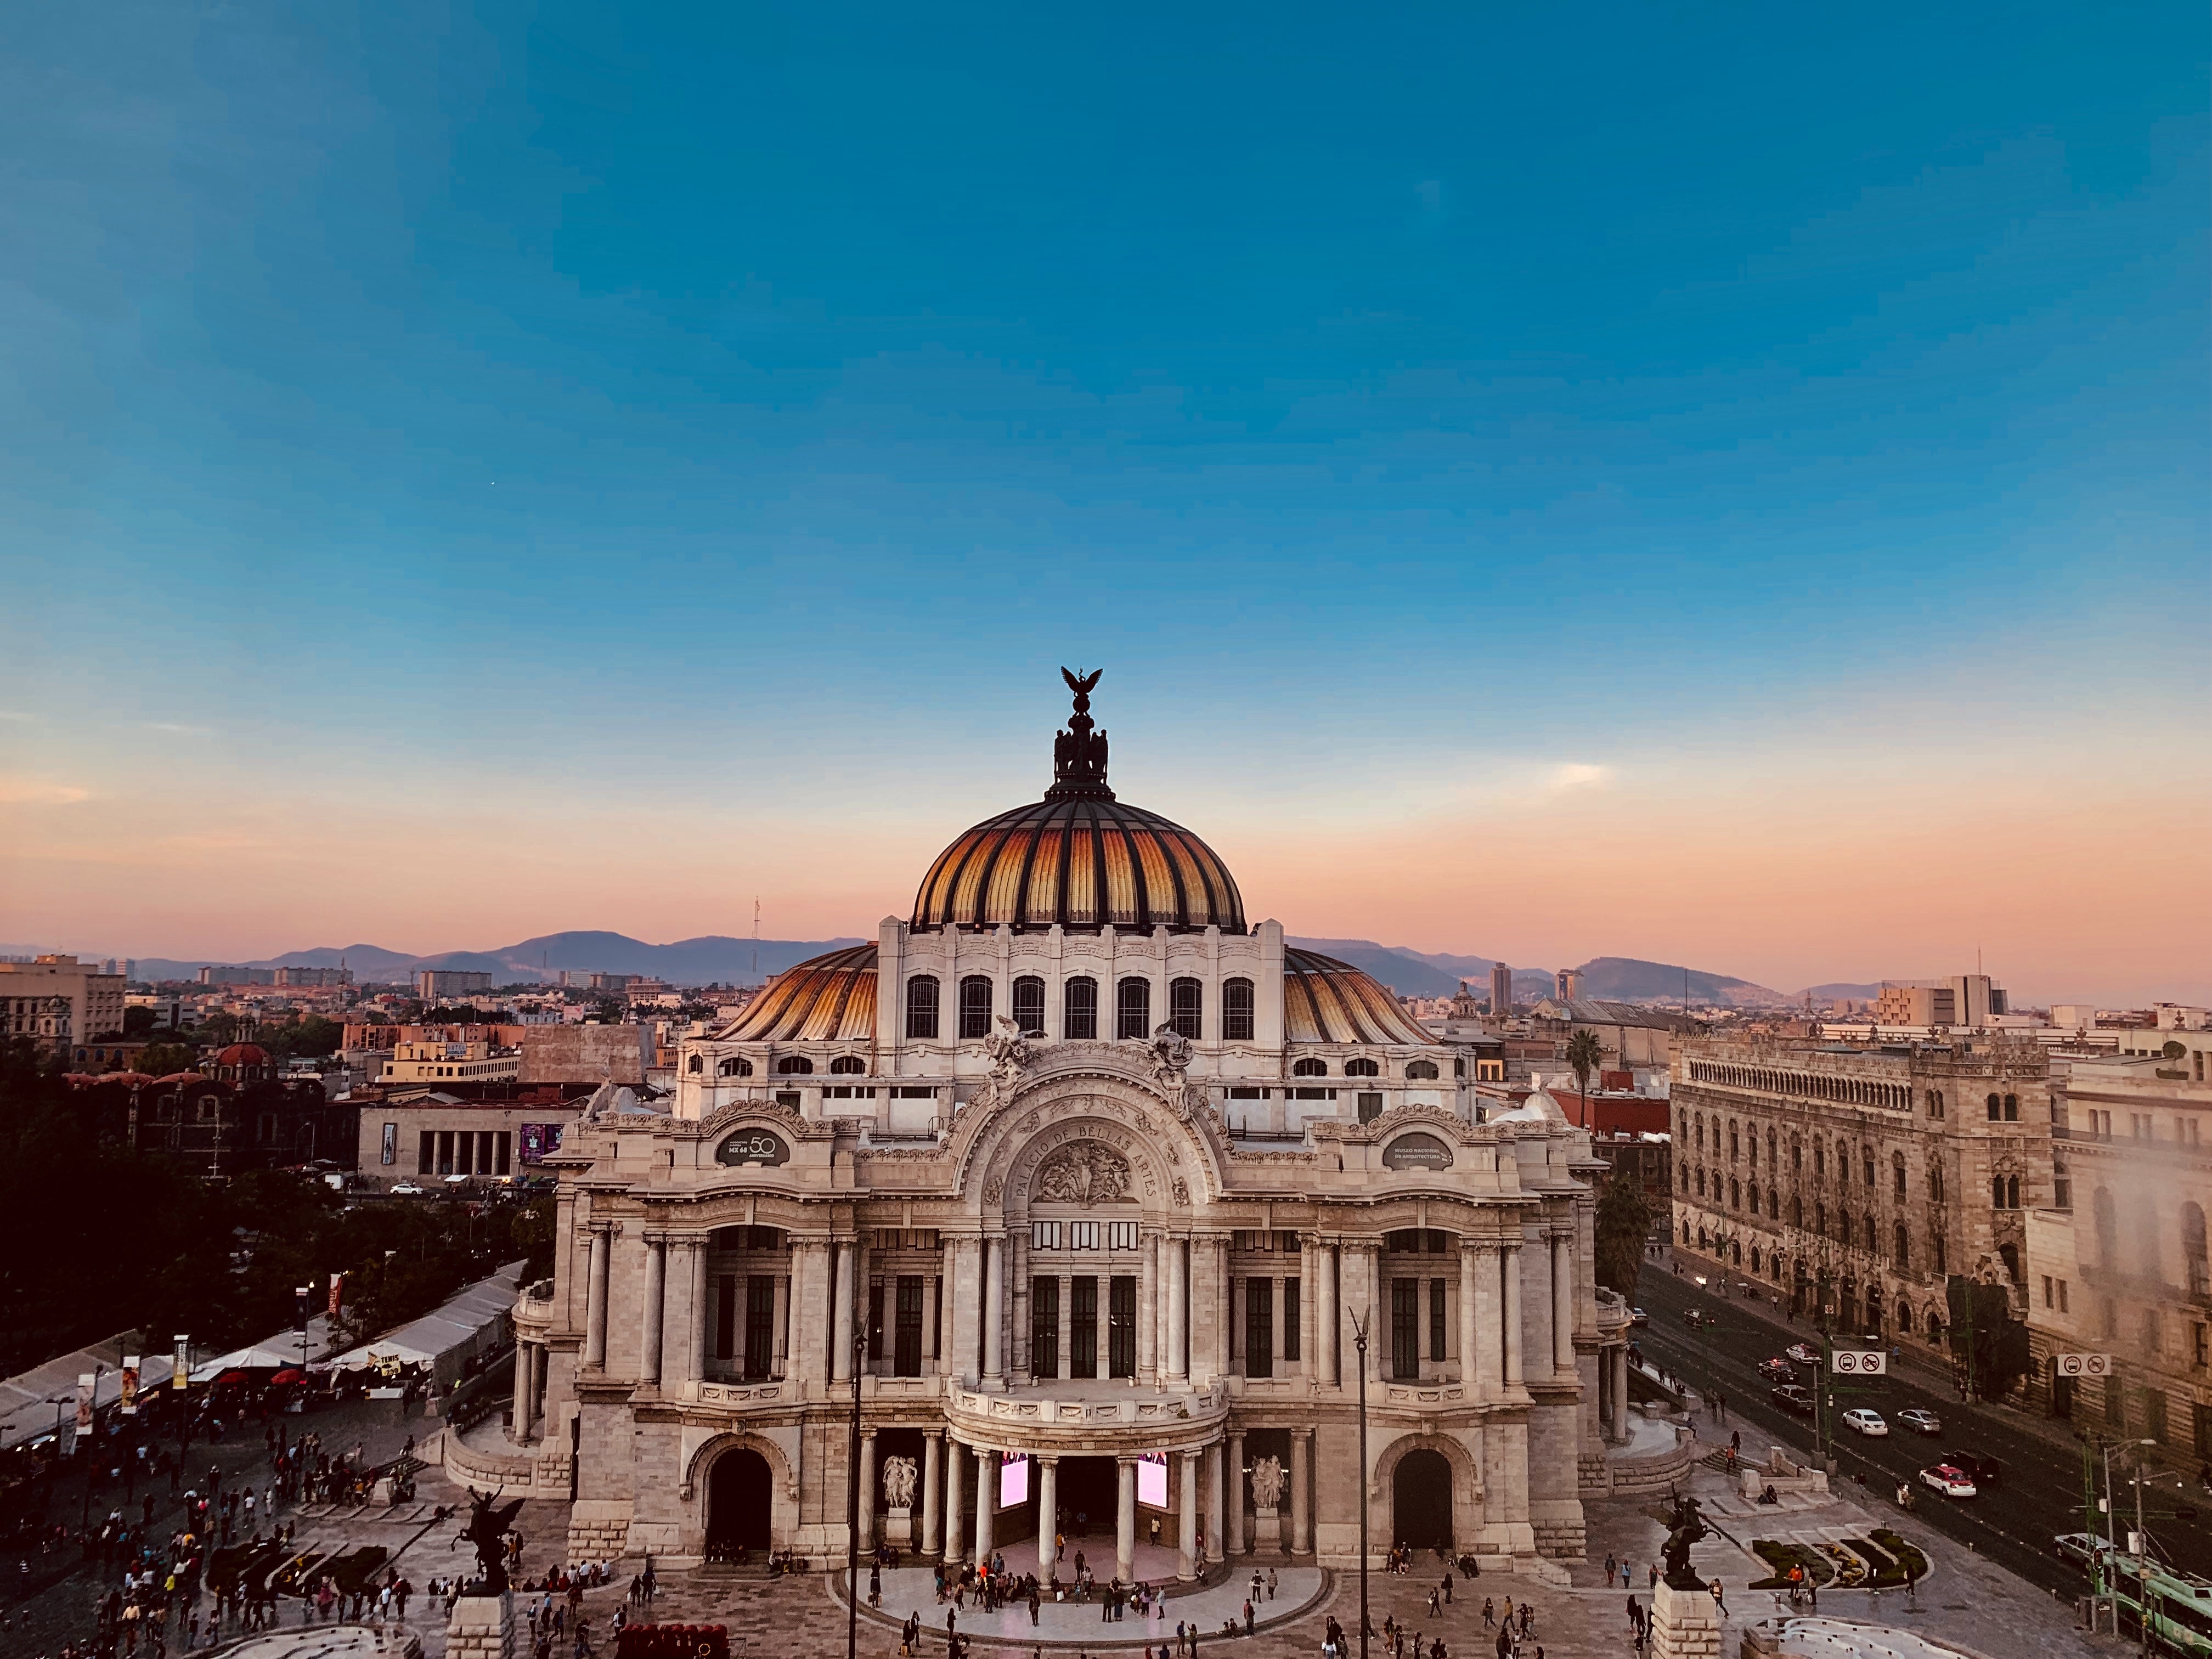 Palacio de Bellas Artes, Mexico City; Photo: Unspalsh